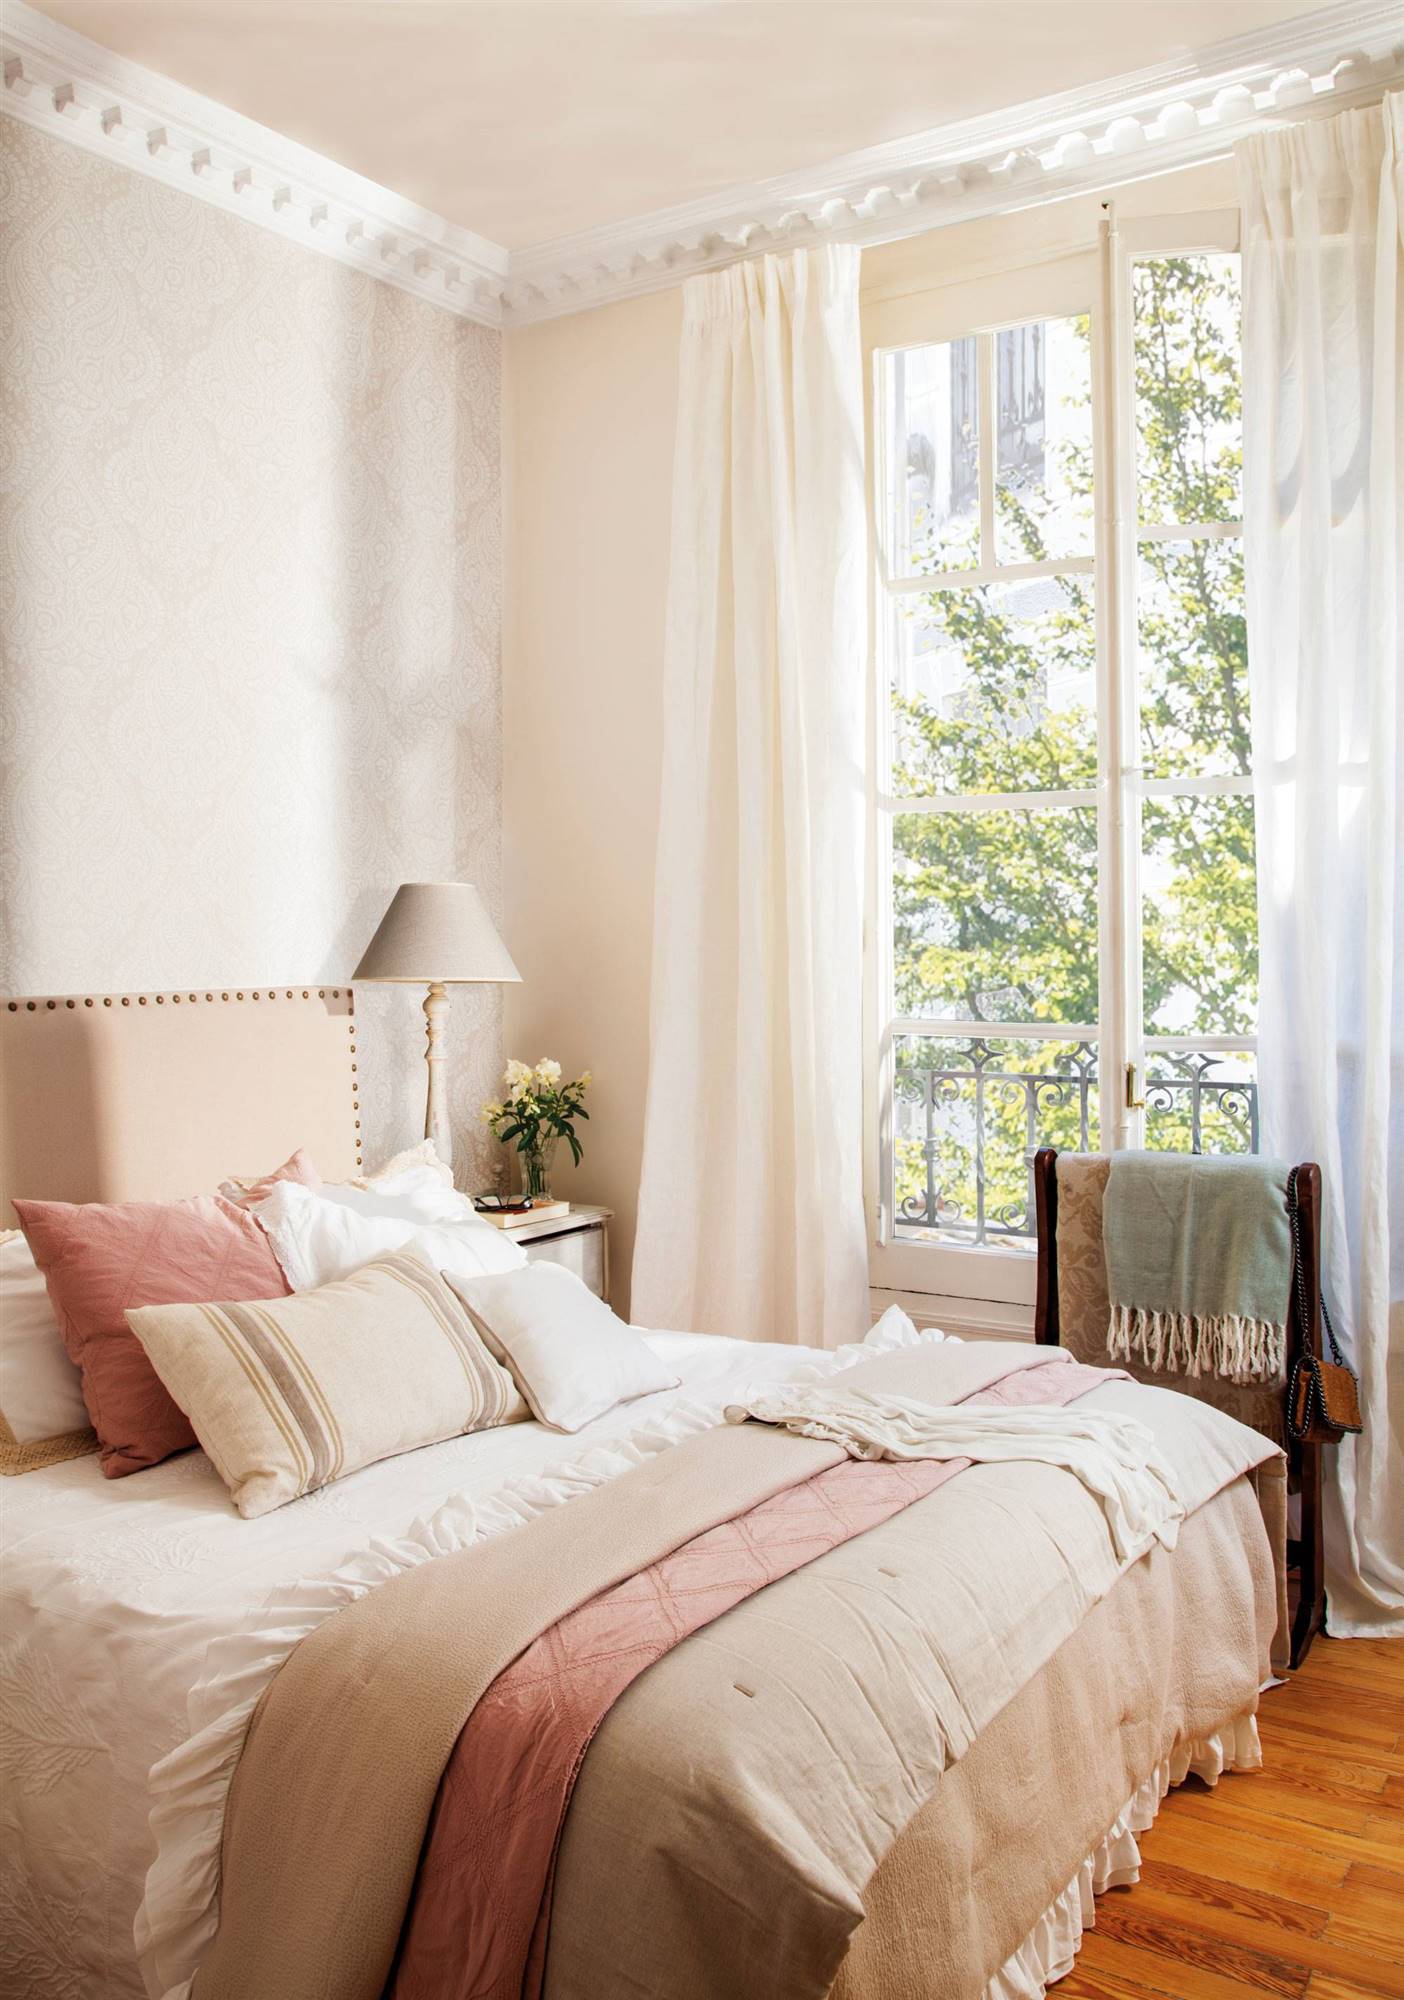 Dormitorio clásico con papel pintado y galán de noche de madera_00482198